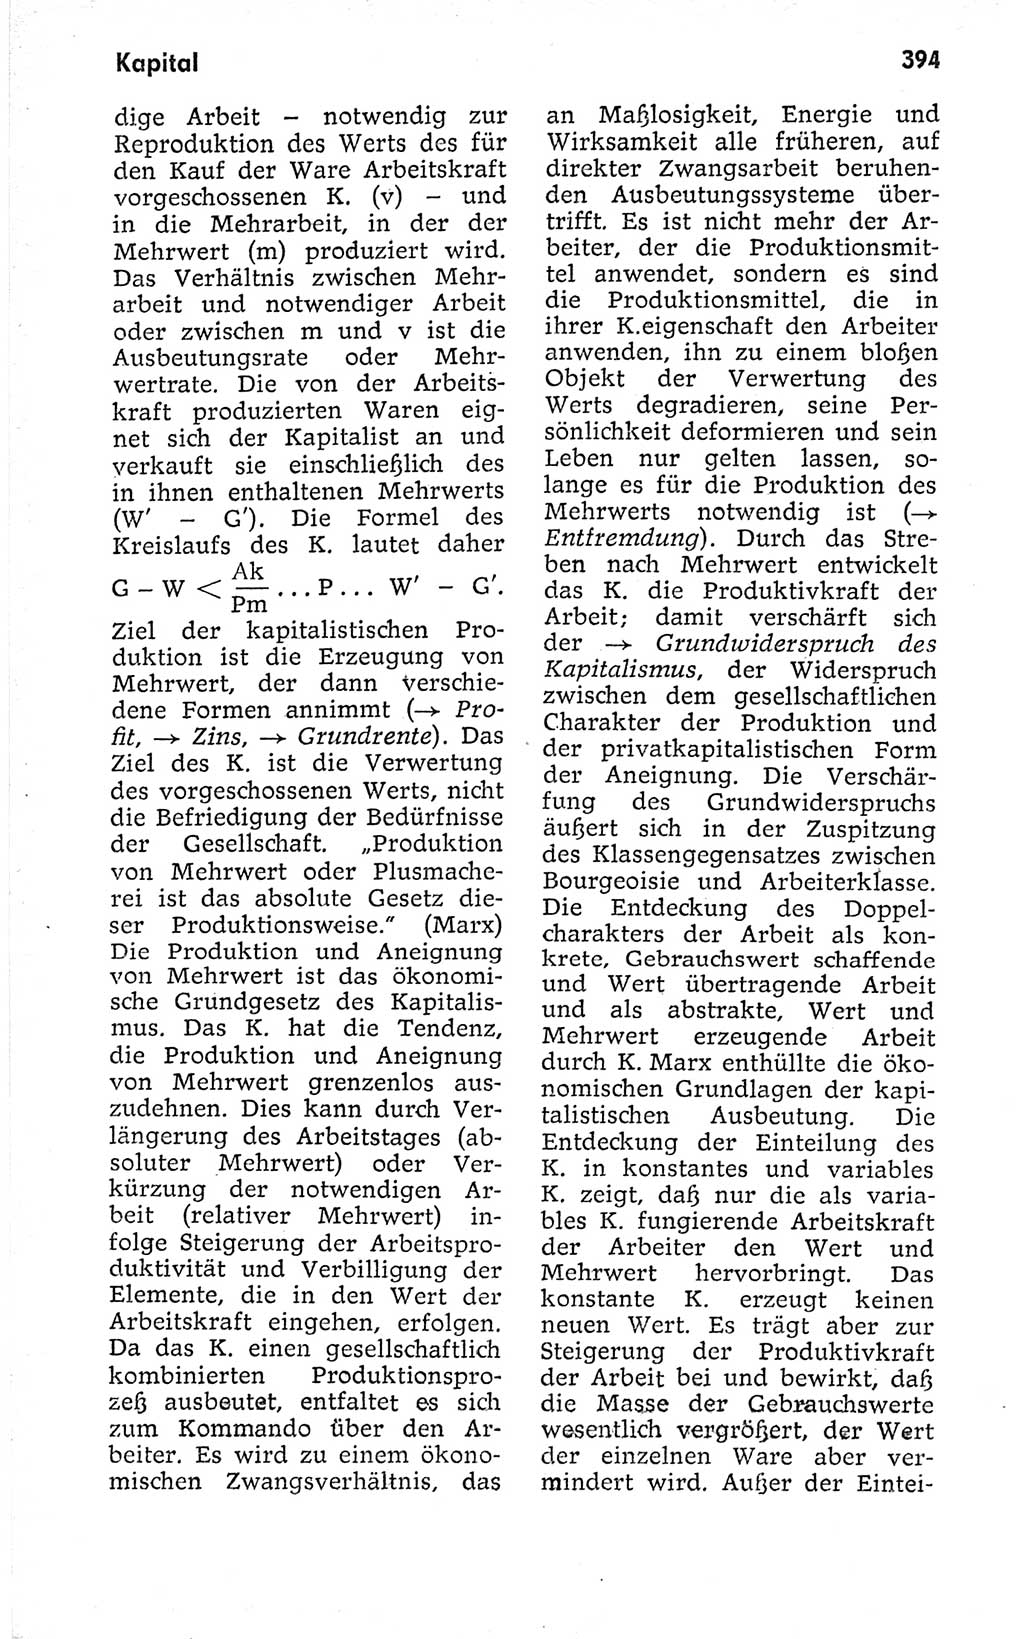 Kleines politisches Wörterbuch [Deutsche Demokratische Republik (DDR)] 1973, Seite 394 (Kl. pol. Wb. DDR 1973, S. 394)